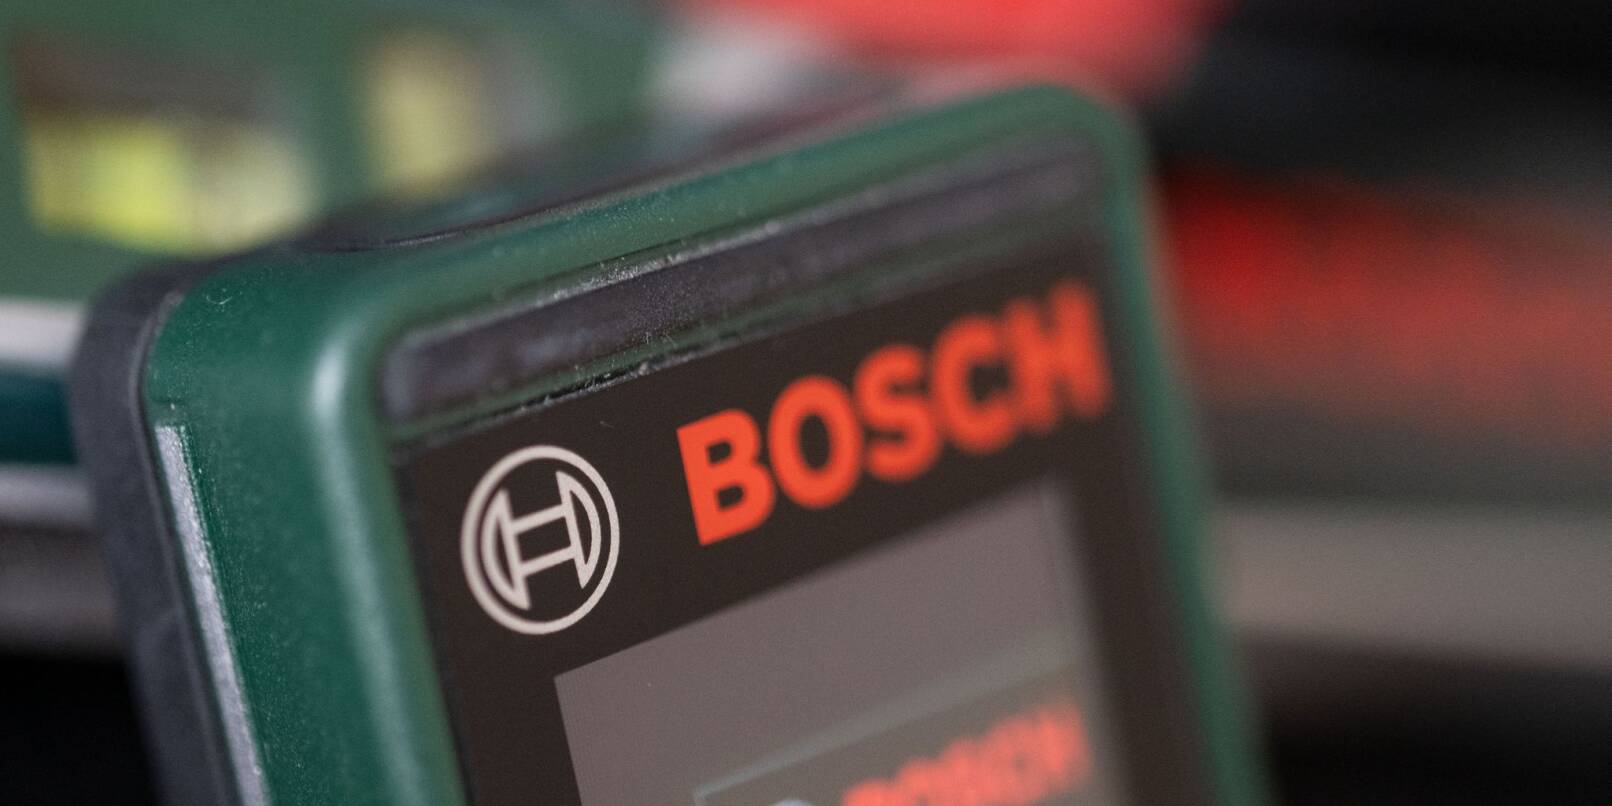 Messwerkzeuge der Robert Bosch Power Tools GmbH, liegen auf einem Tisch.